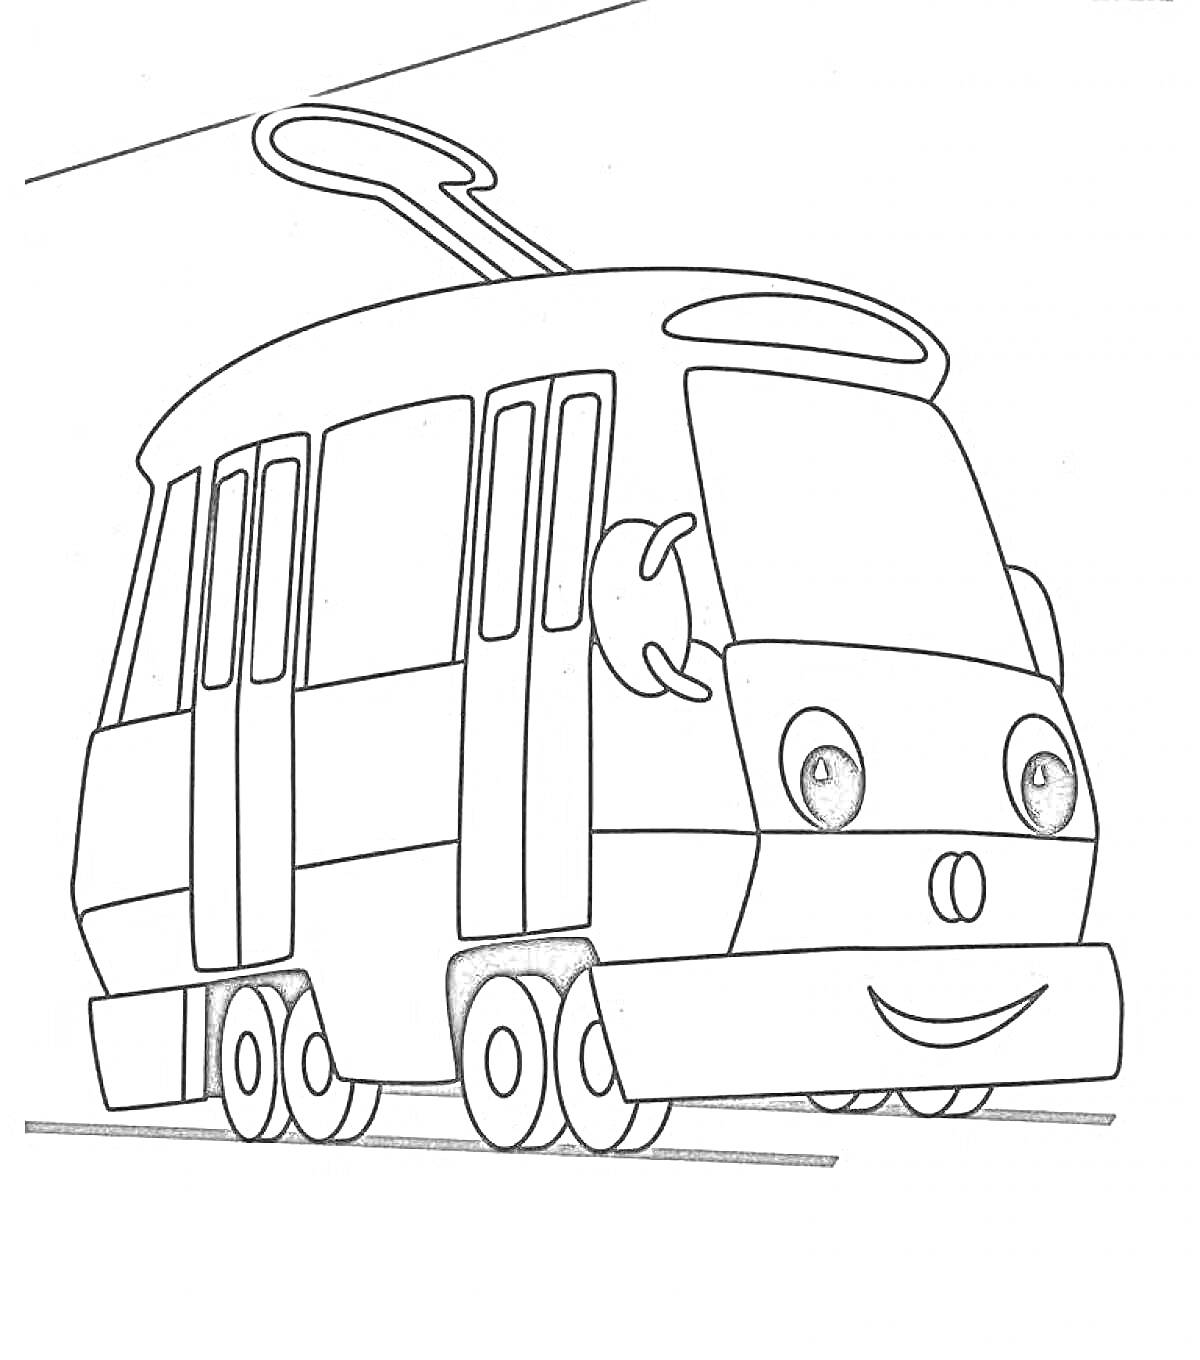 Раскраска Раскраска с трамваем с глазами и улыбкой на лицевой части, едущим по рельсам